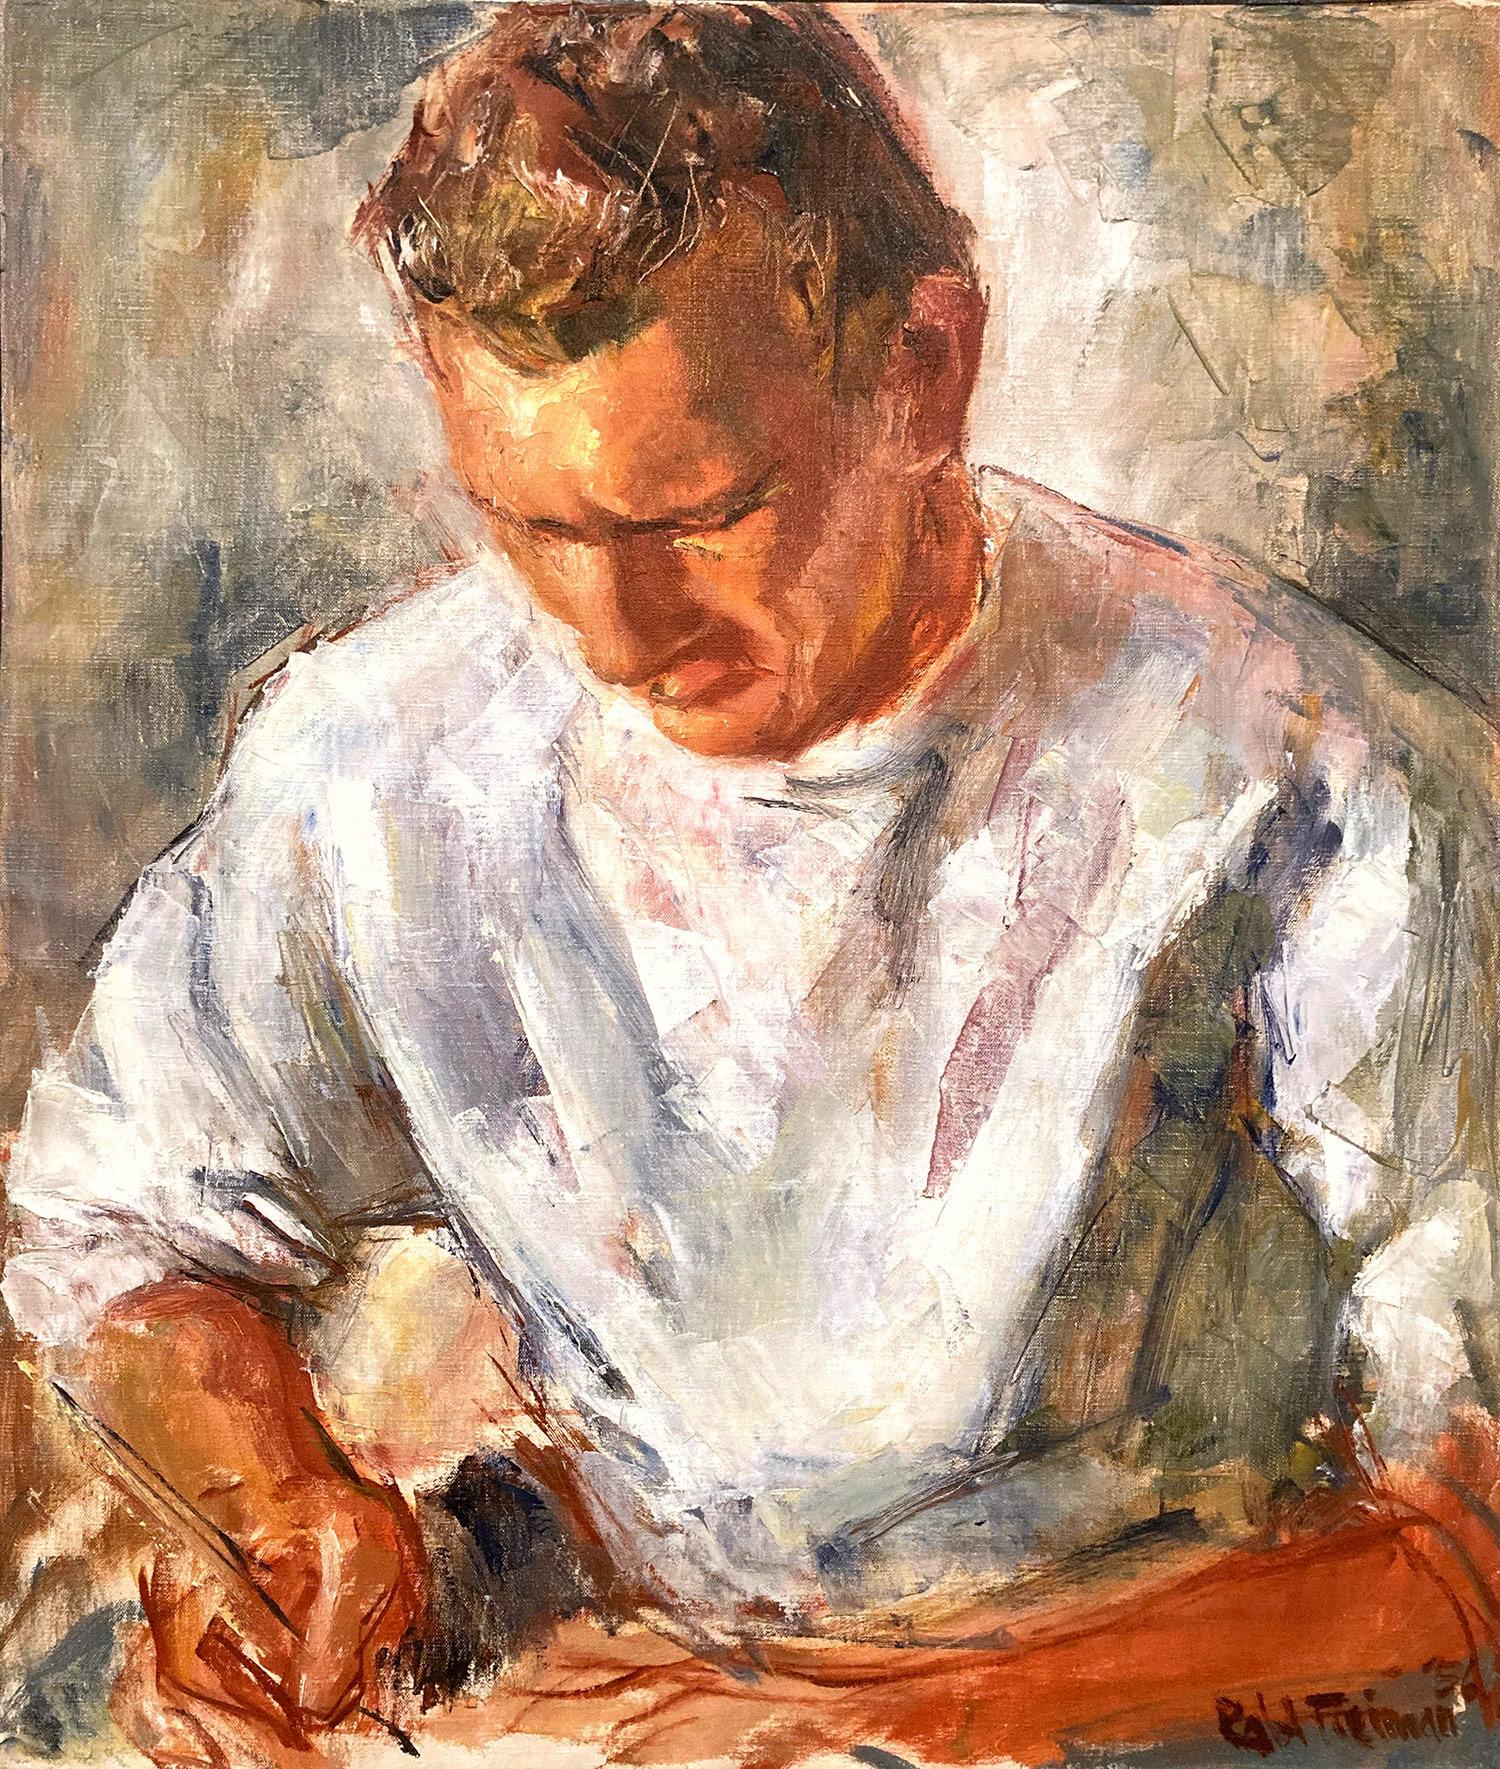 Figurative Painting Robert Freiman - « Portrait d'un homme écrivant » - Peinture à l'huile sur toile américaine du milieu du 20e siècle